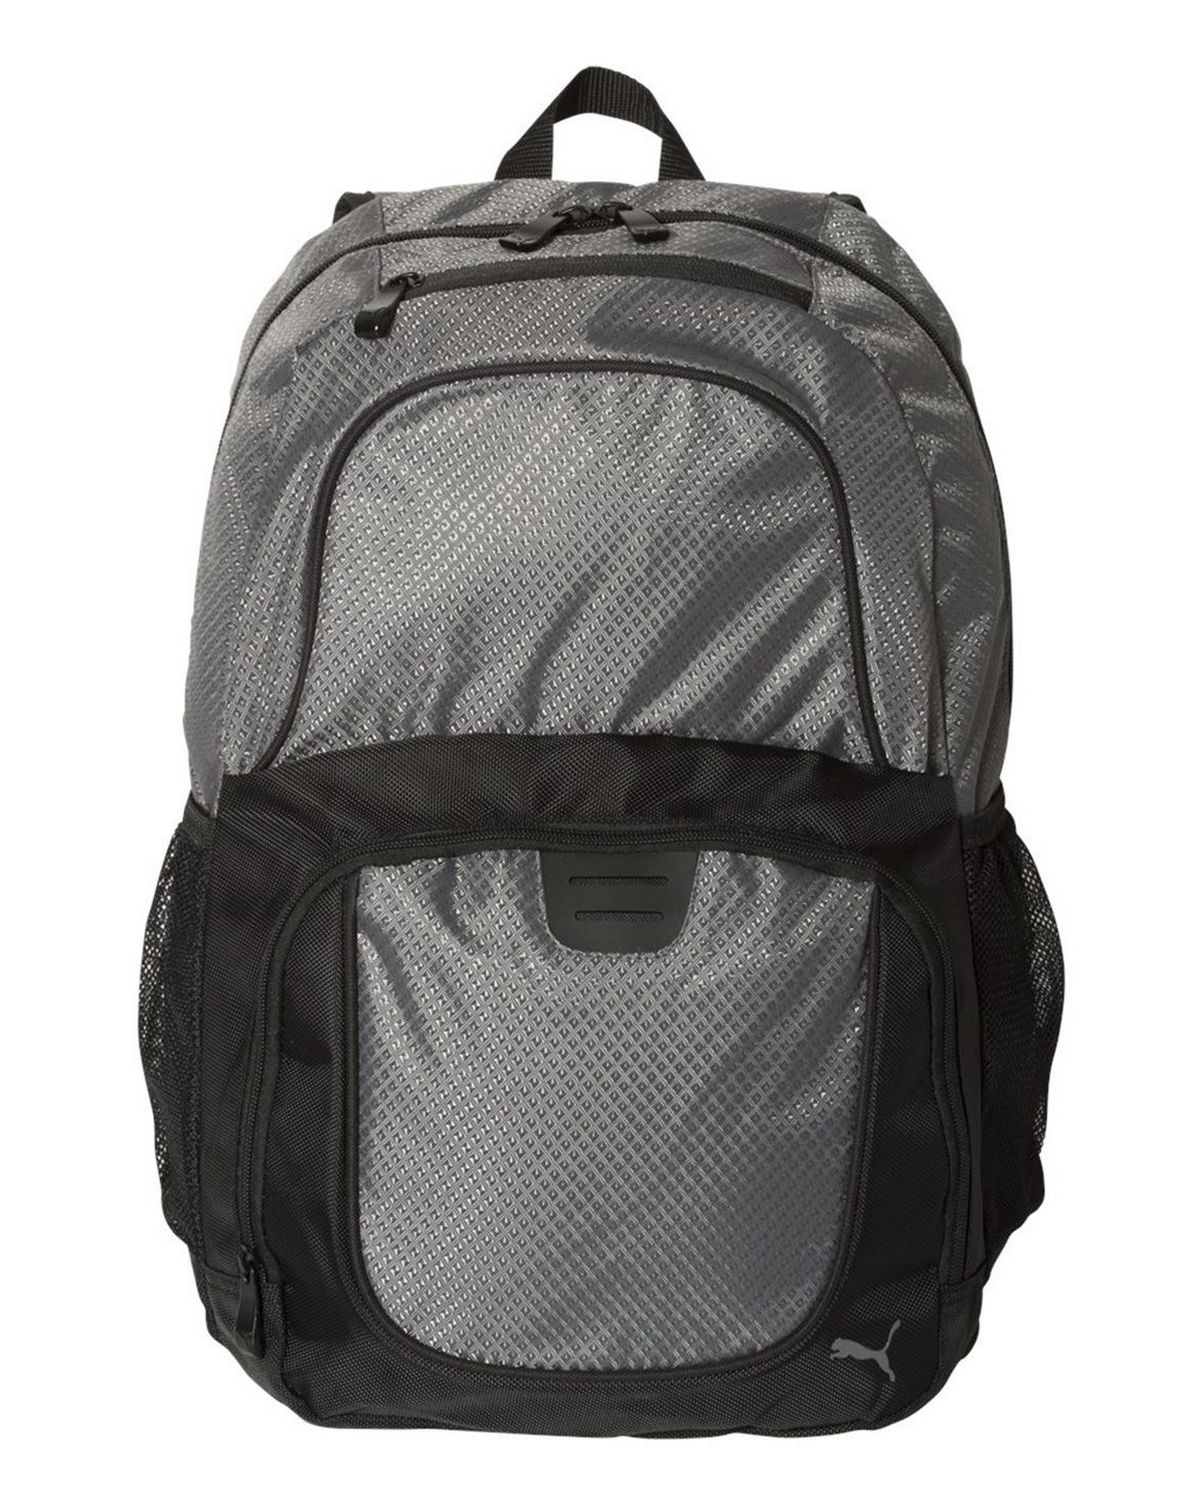 Puma PSC1028 25L Backpack - Shop at 